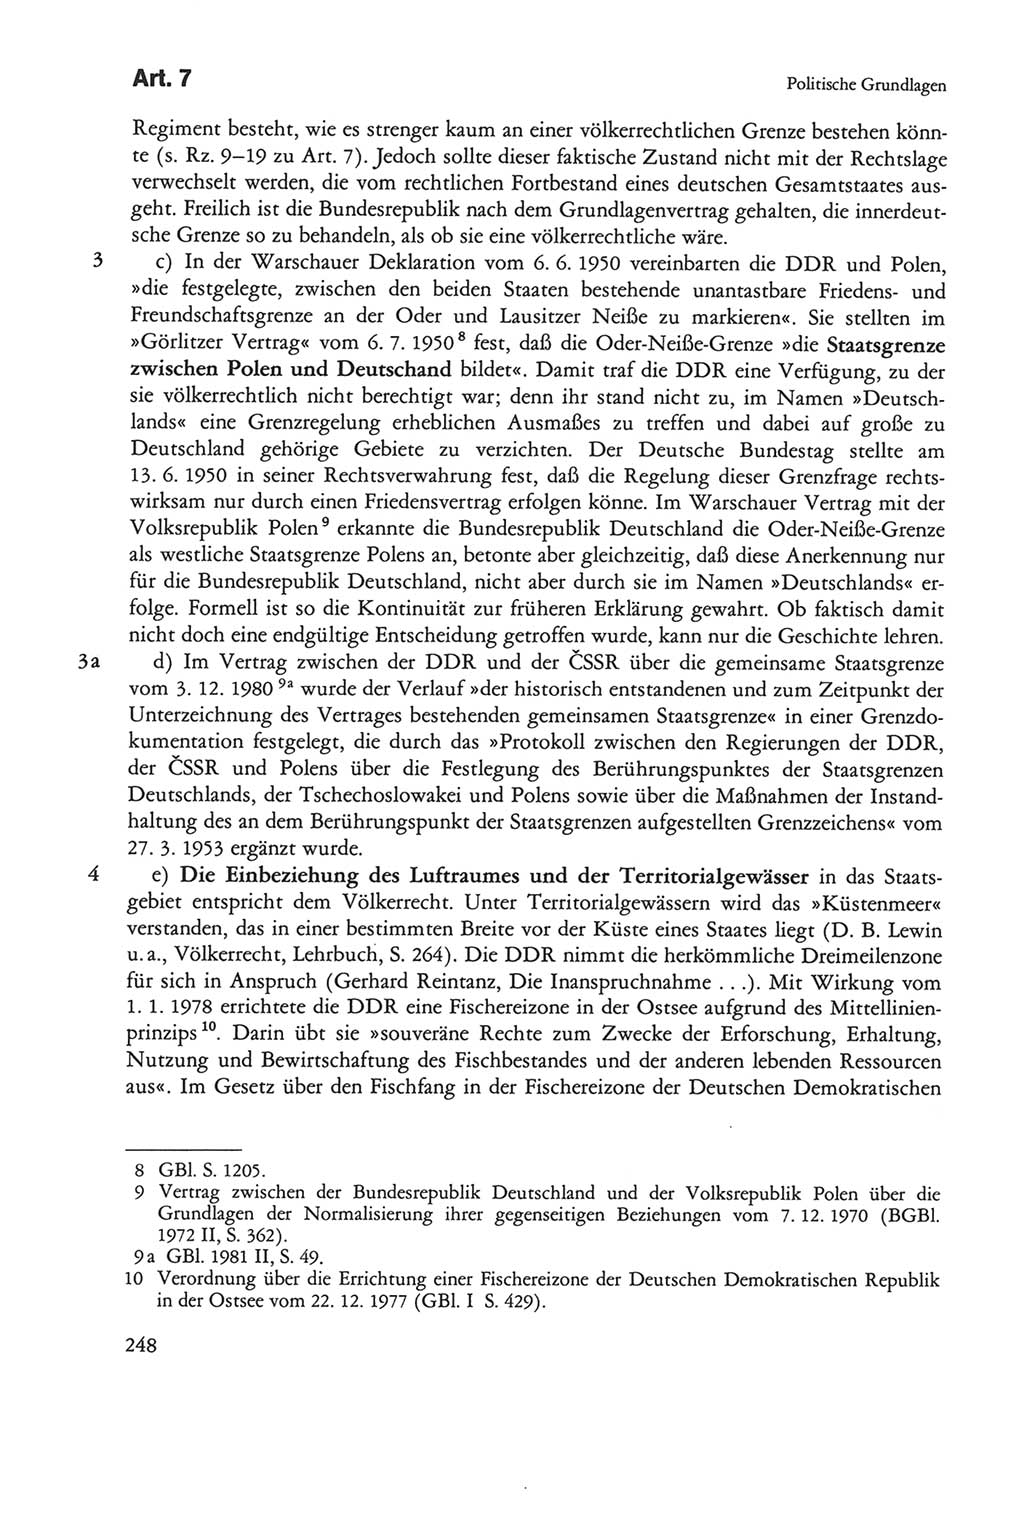 Die sozialistische Verfassung der Deutschen Demokratischen Republik (DDR), Kommentar mit einem Nachtrag 1997, Seite 248 (Soz. Verf. DDR Komm. Nachtr. 1997, S. 248)